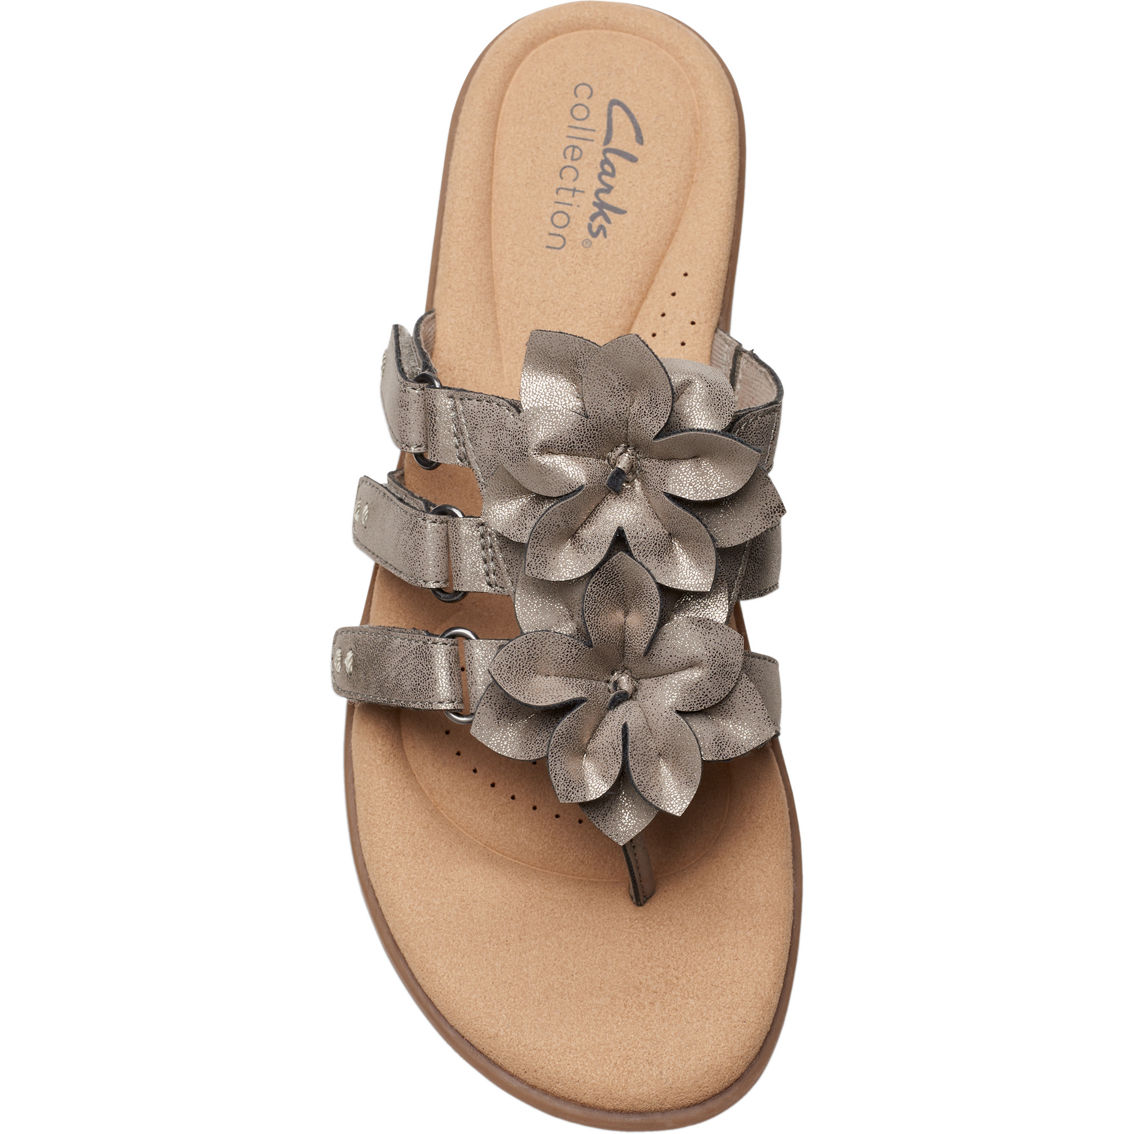 Clarks Elizabelle Mae Floral Flip Flop Sandals - Image 4 of 6